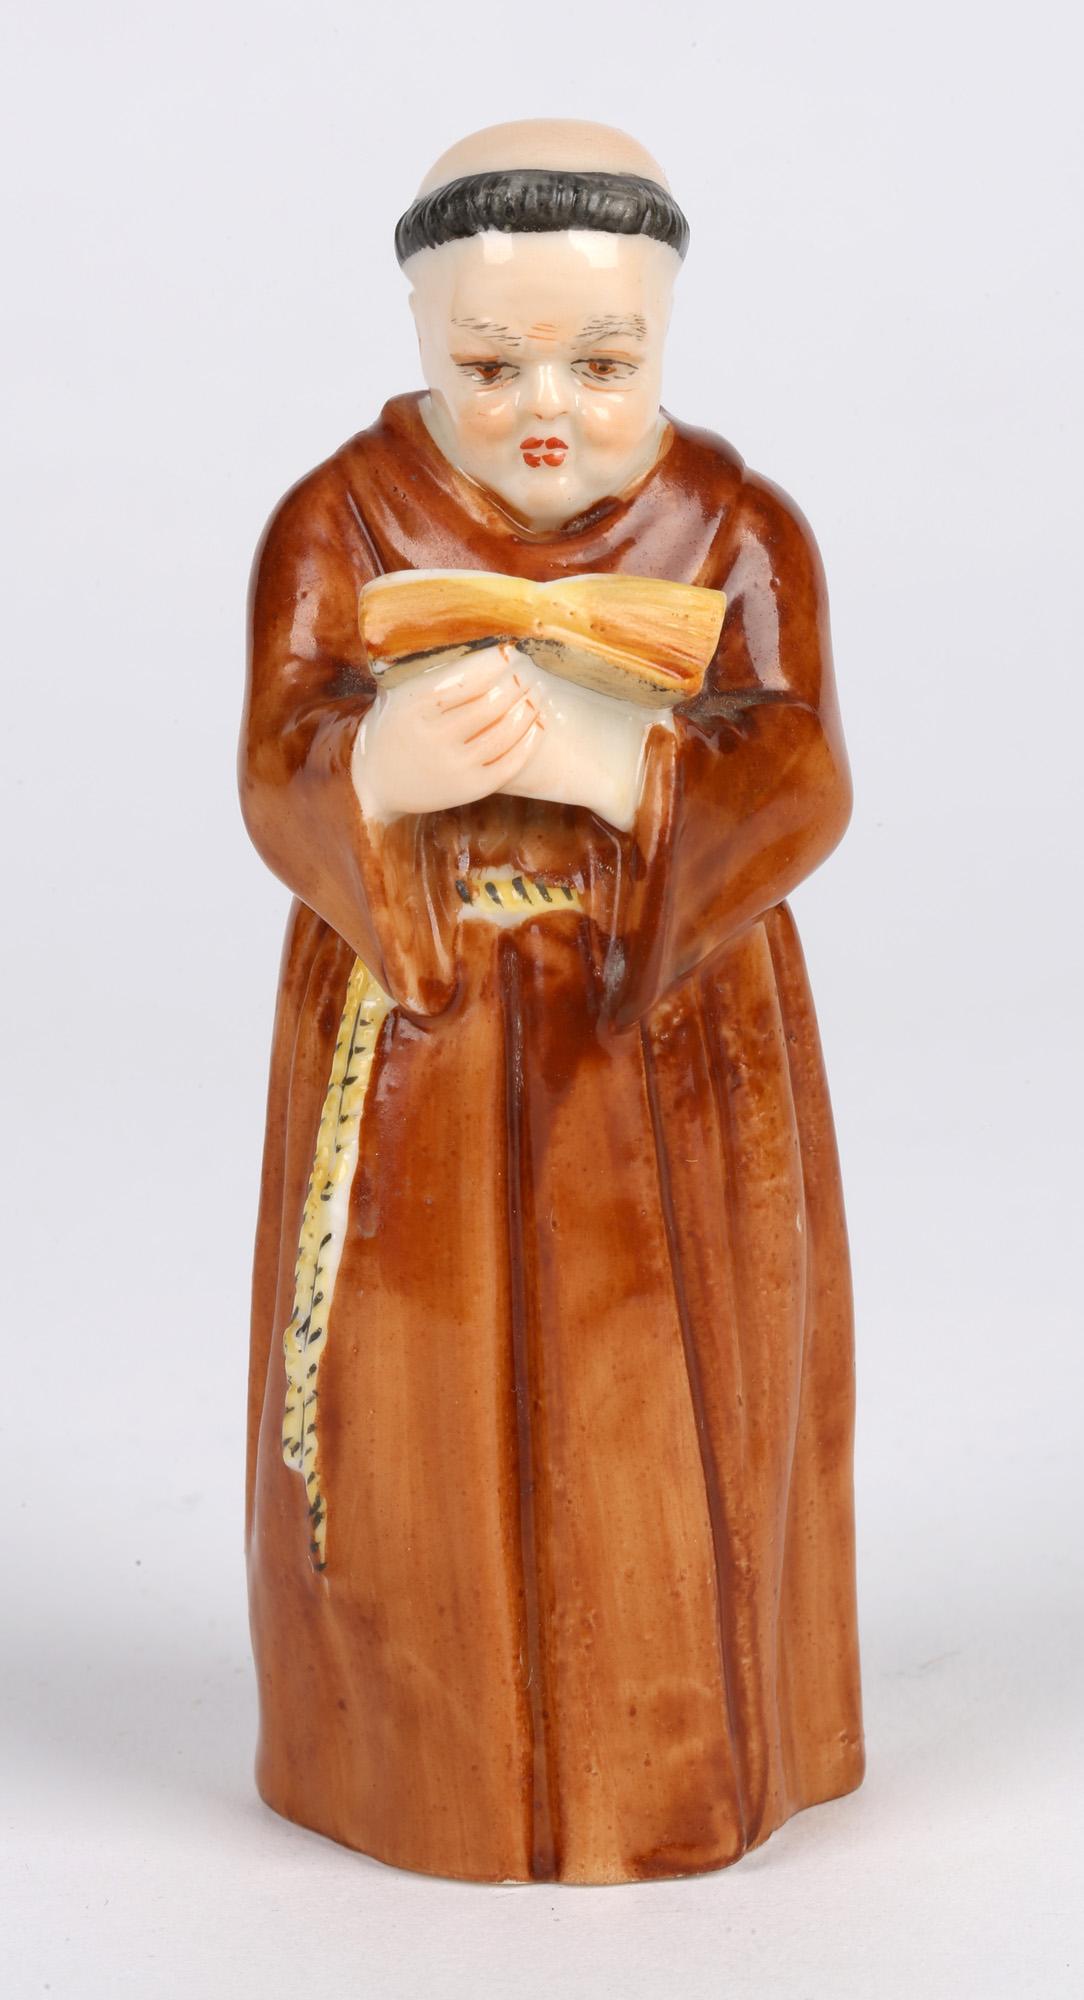 Un éteignoir en porcelaine Royal Worcester très finement réalisé, représentant un moine lisant une bible et daté de 1905. L'éteignoir est représenté comme un moine vêtu d'une robe monastique nouée autour de la taille, tenant une bible ouverte dans